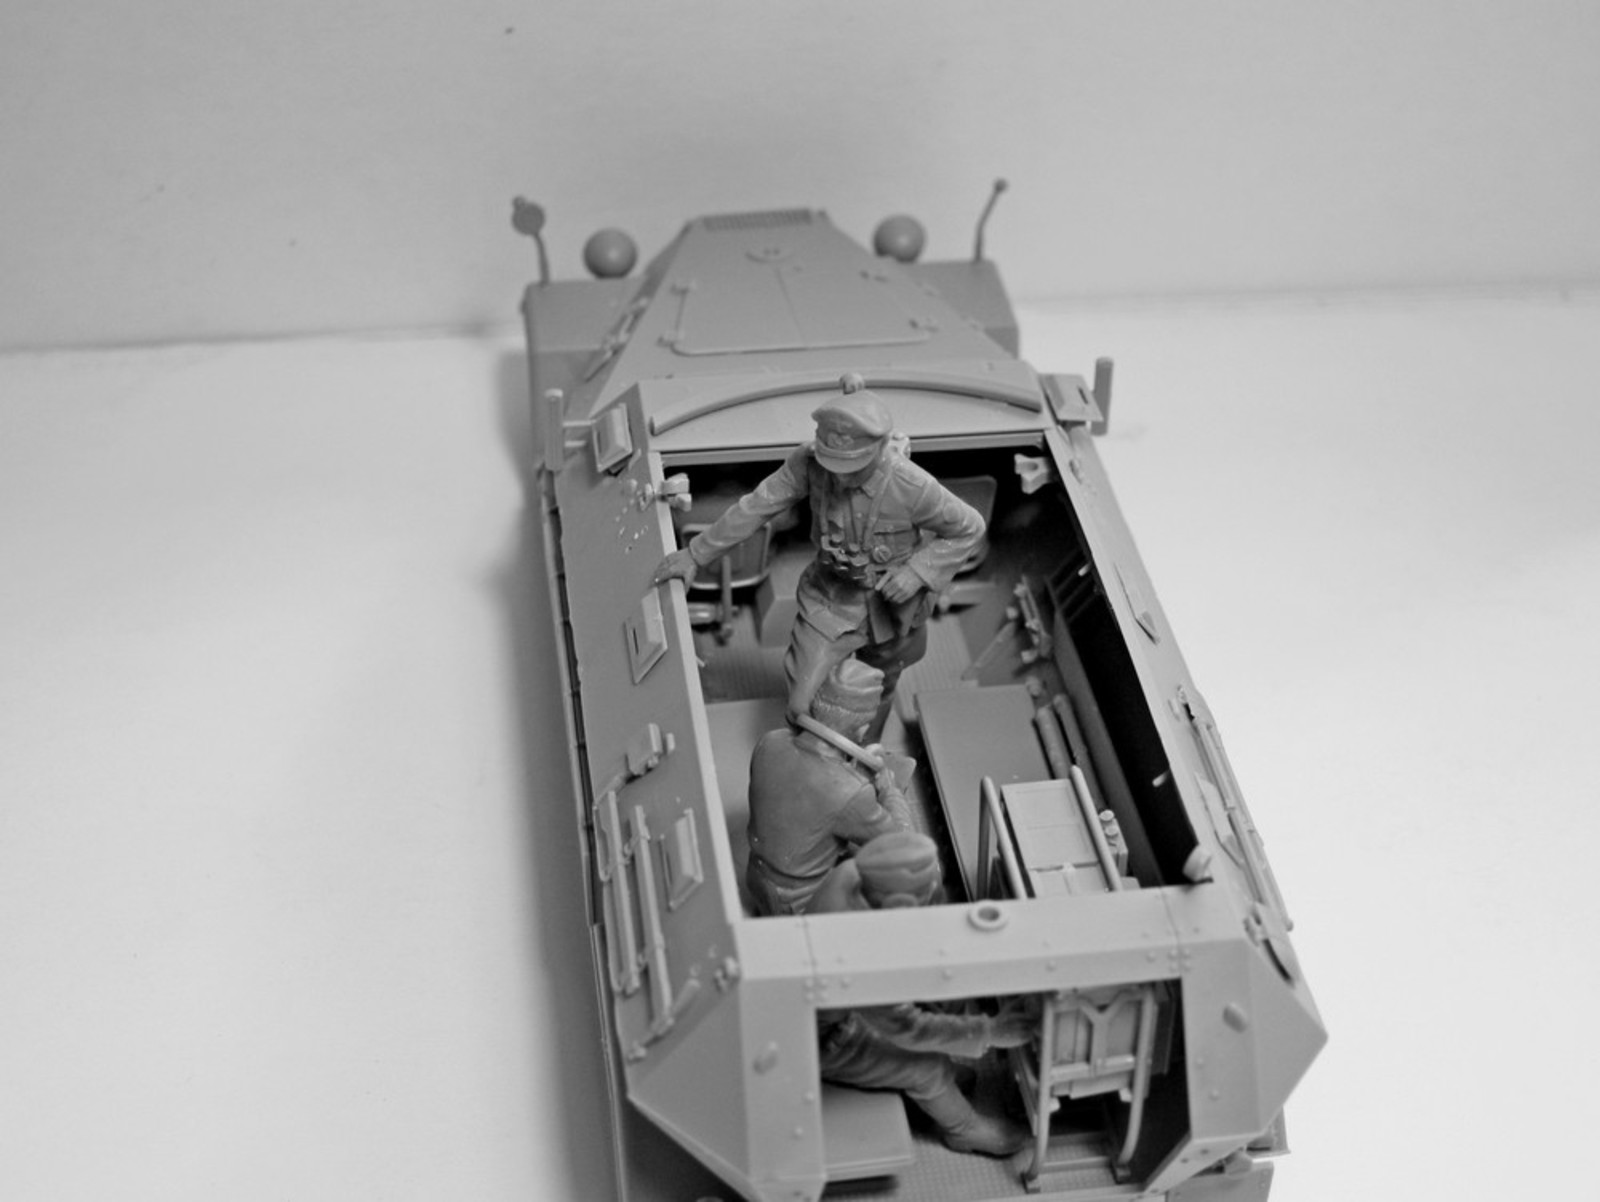 1/35 Германский экипаж командной машины (1939-1942 г.) #35644 / German Command Vehicle Crew (1939-1942) (4 figures) (100% new molds)